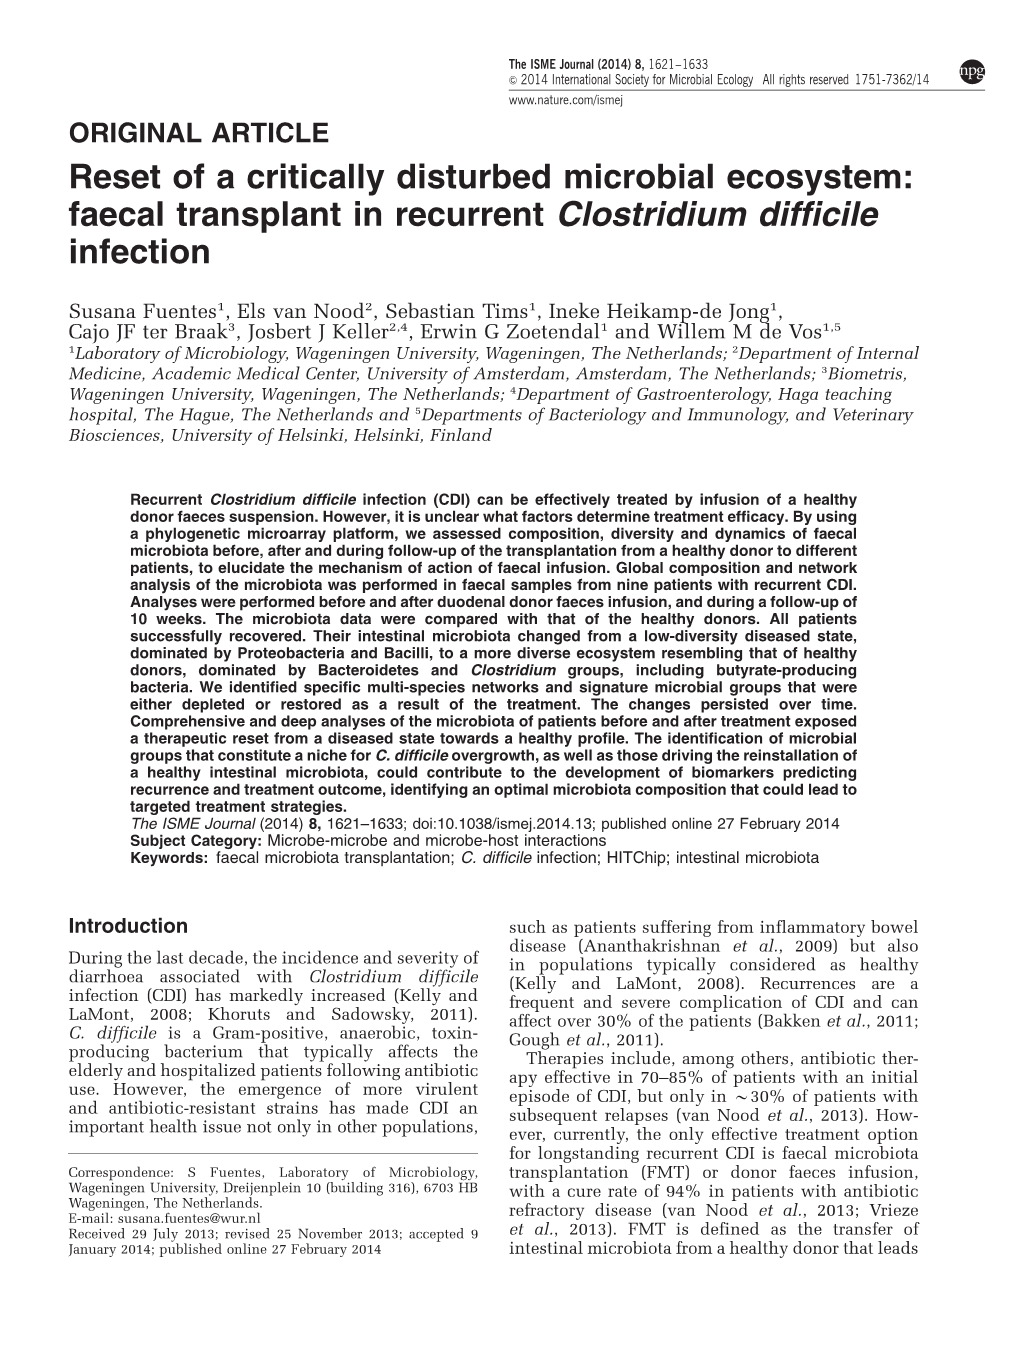 Faecal Transplant in Recurrent Clostridium Difficile Infection